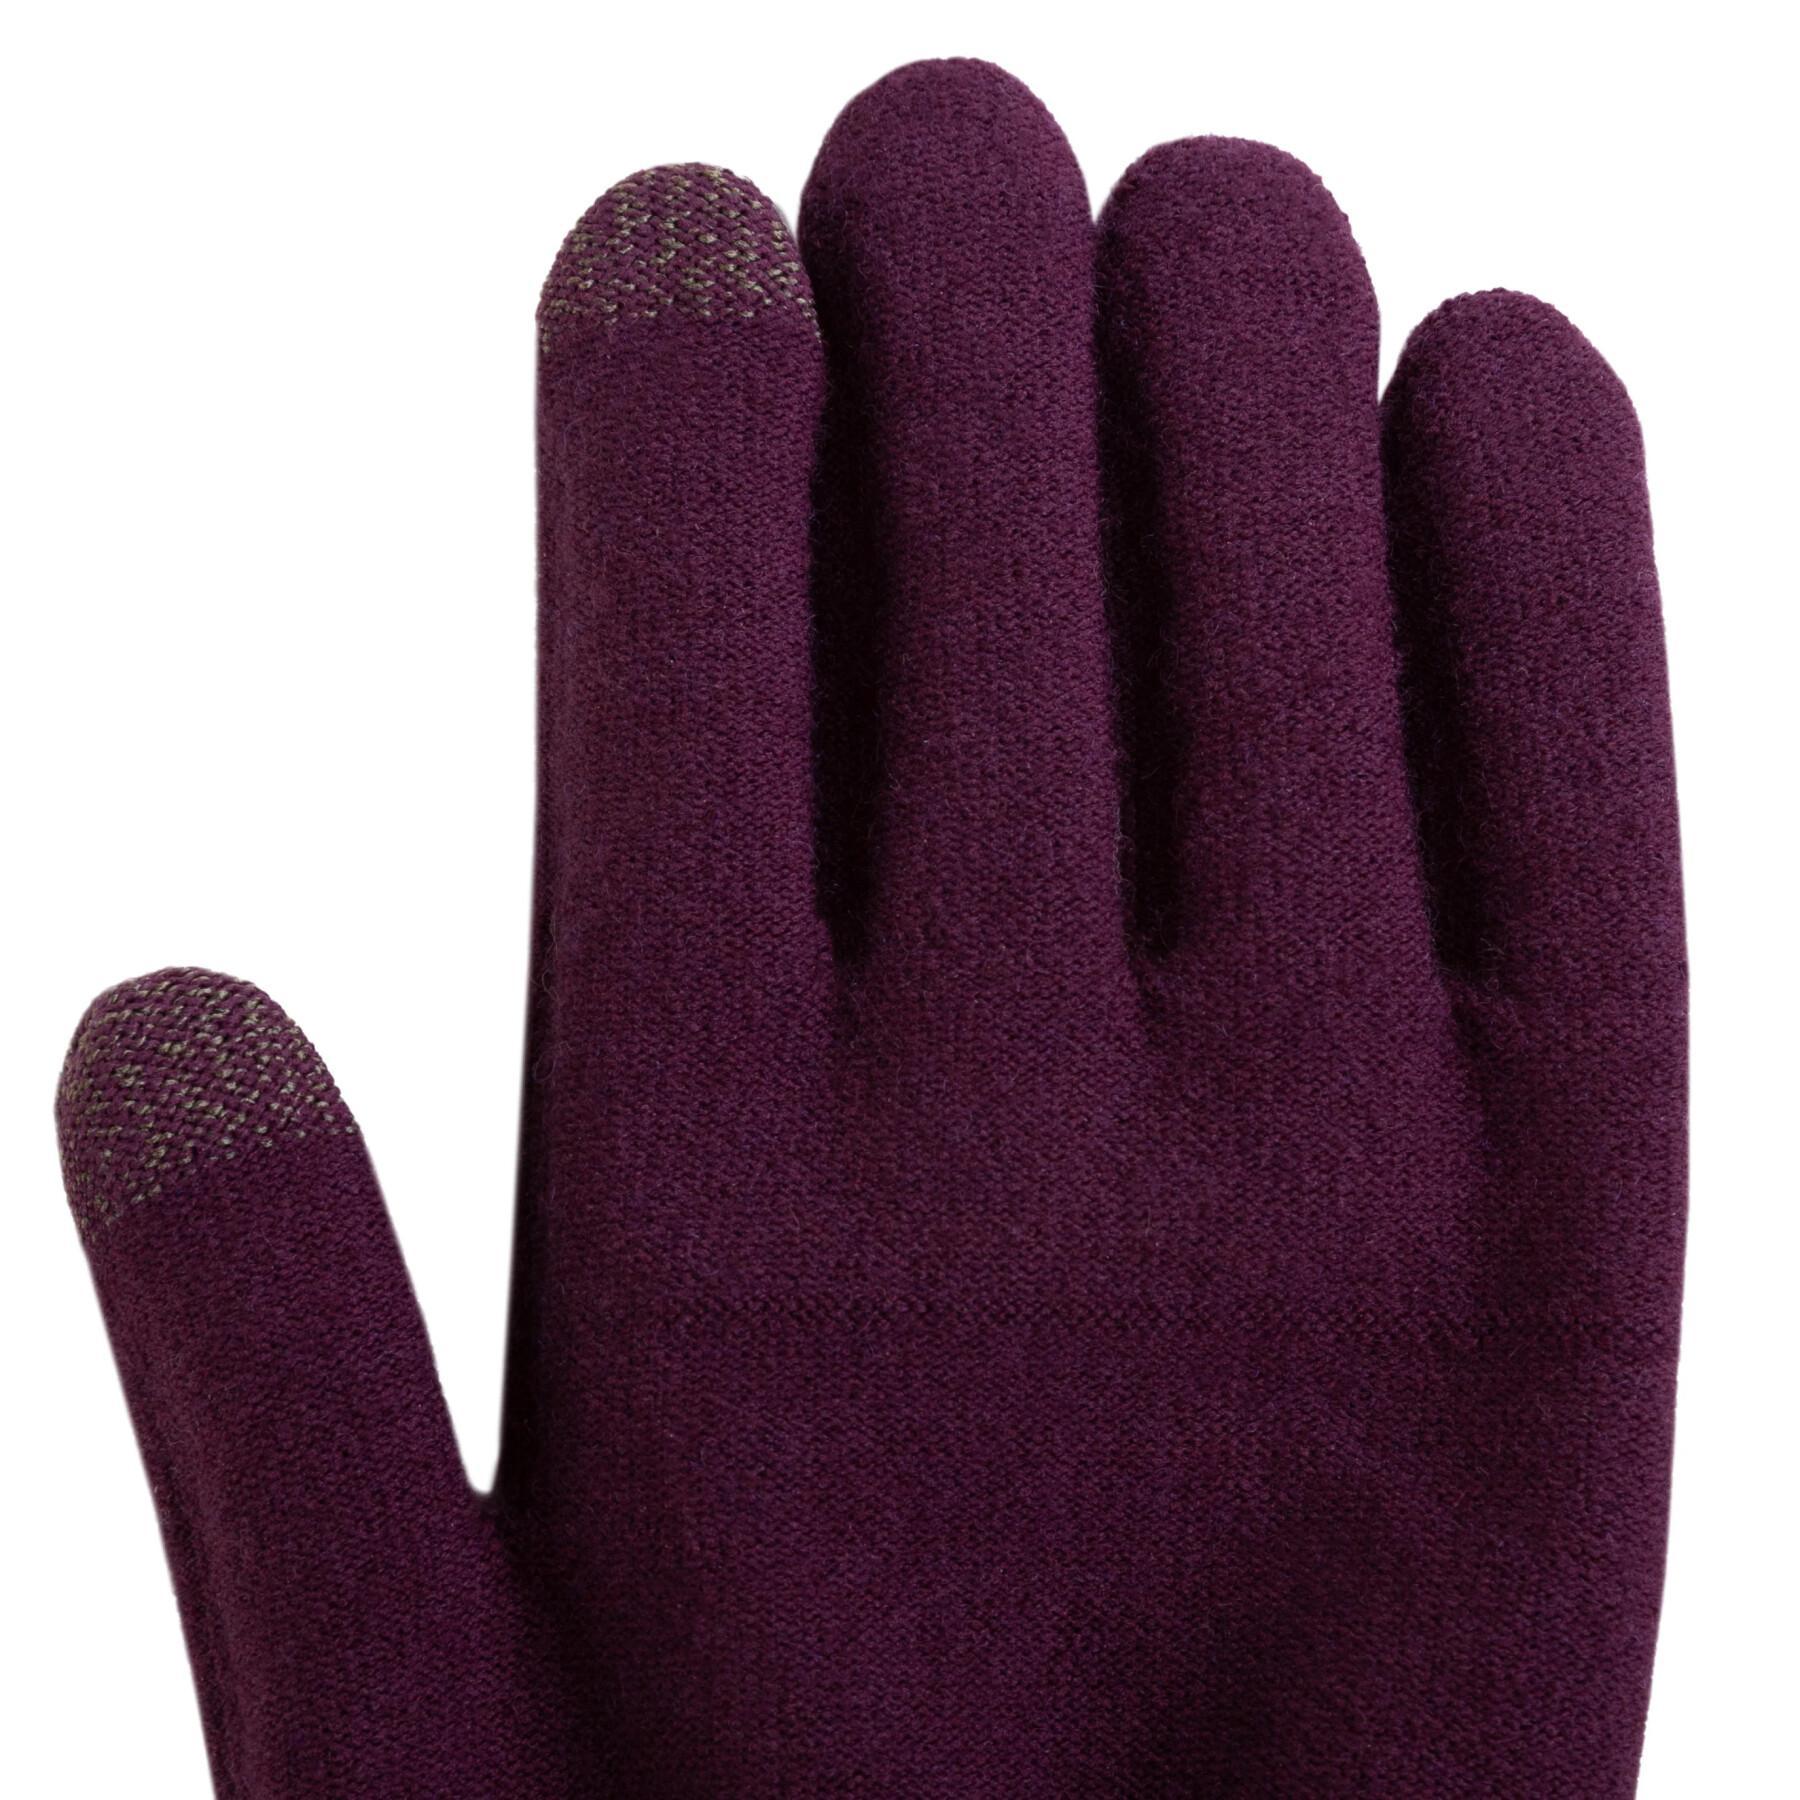 Handschuhe Trekmates Merino Touch